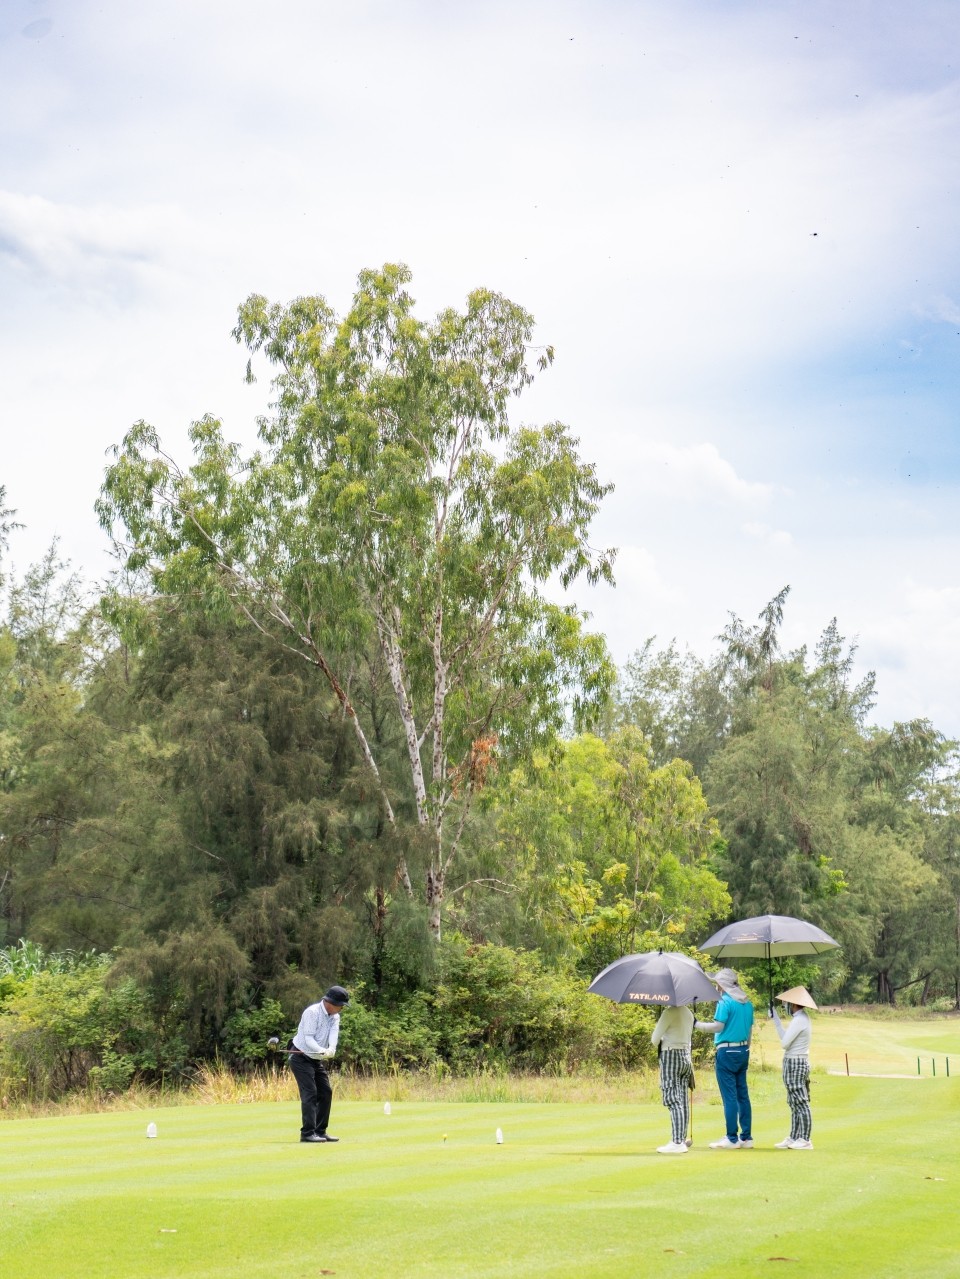 베트남 다낭골프여행 : 겨울 해외 골프여행 동남아 골프텔